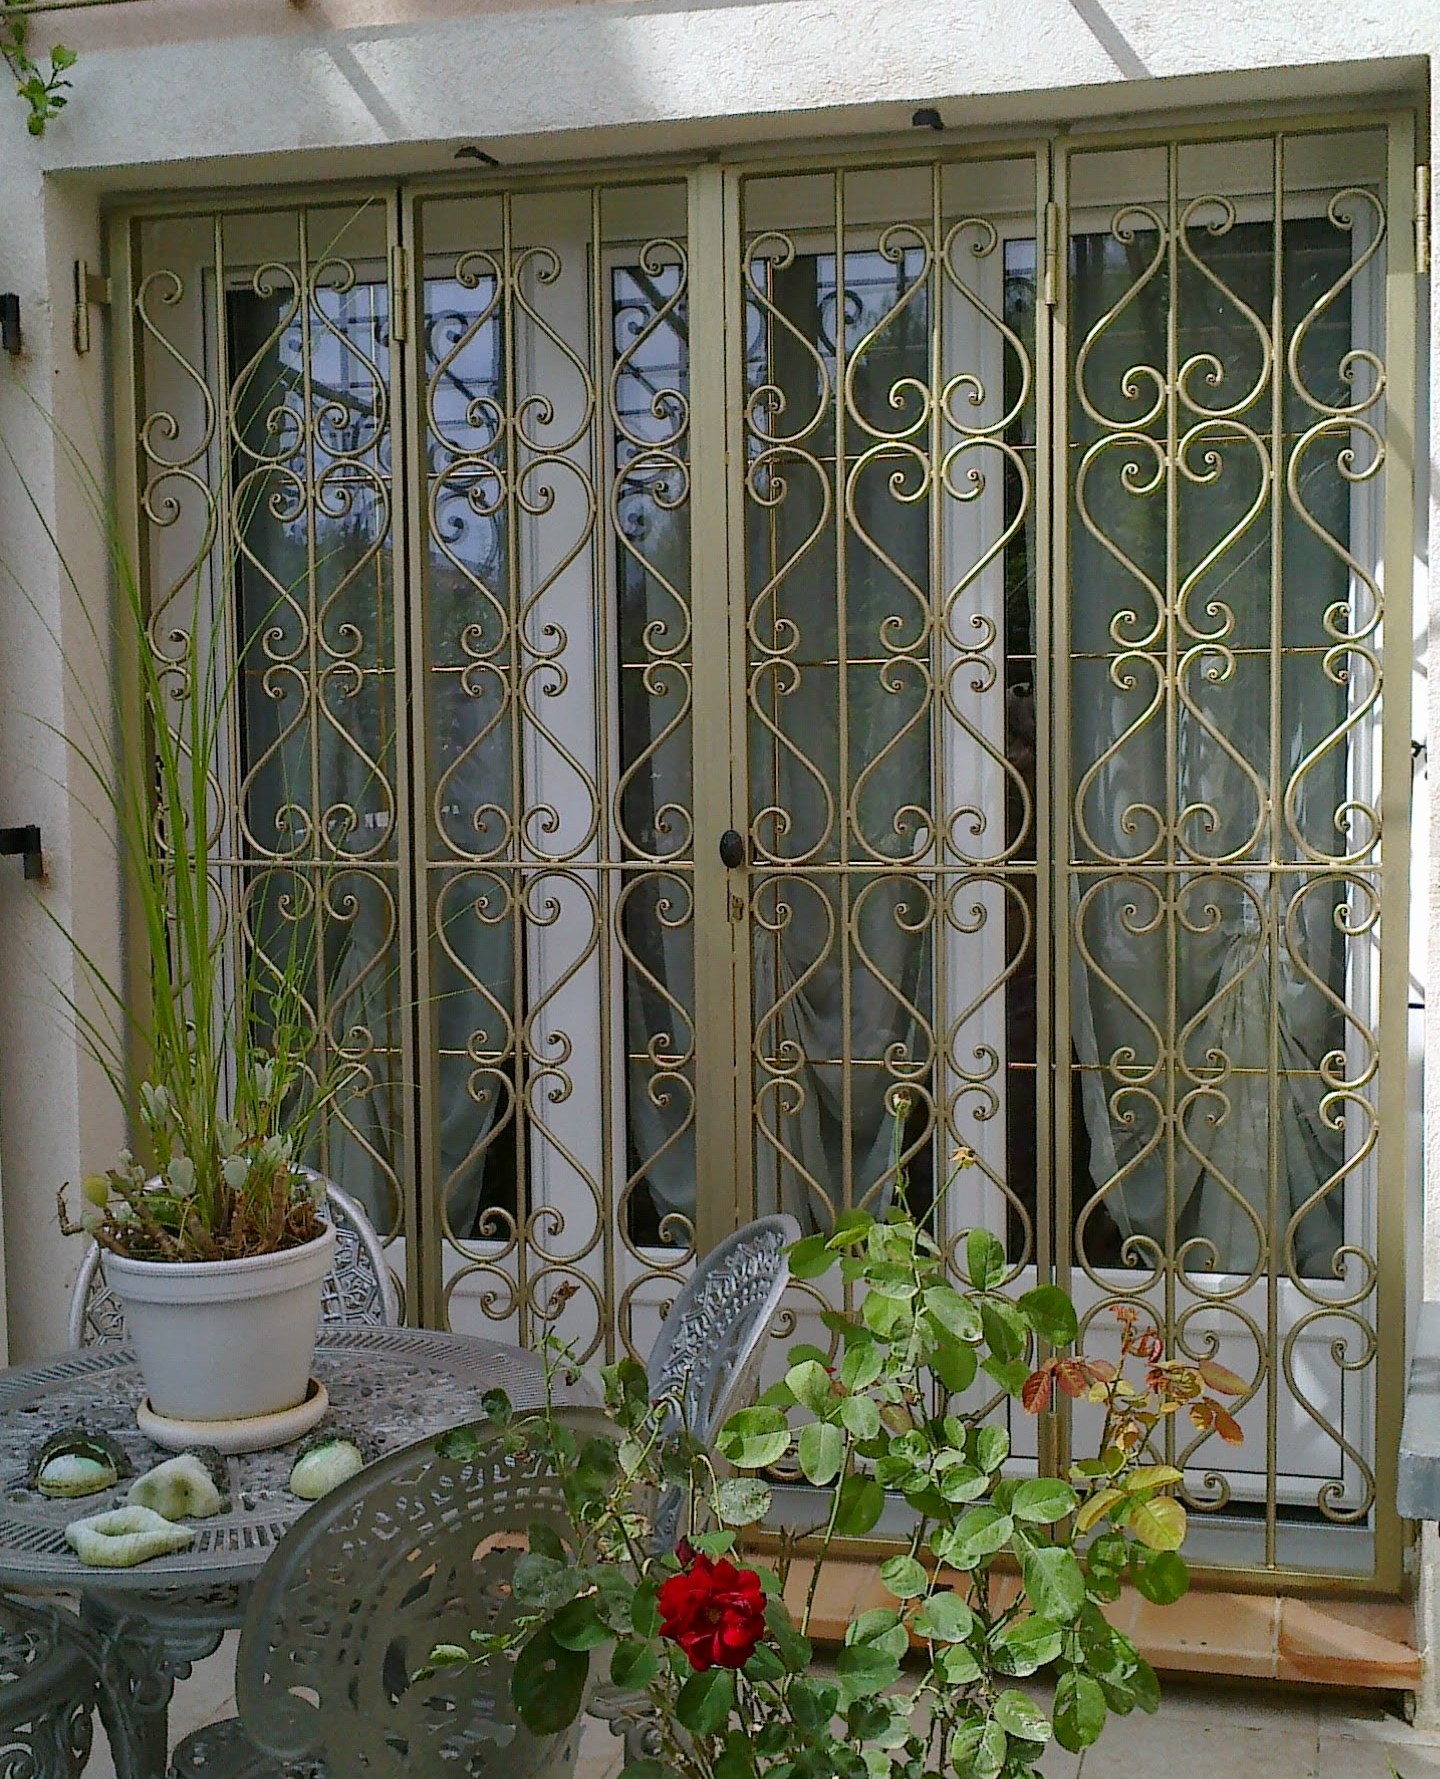 Grille de protection motif végétal - Atmosfer Grille de protection fenêtre